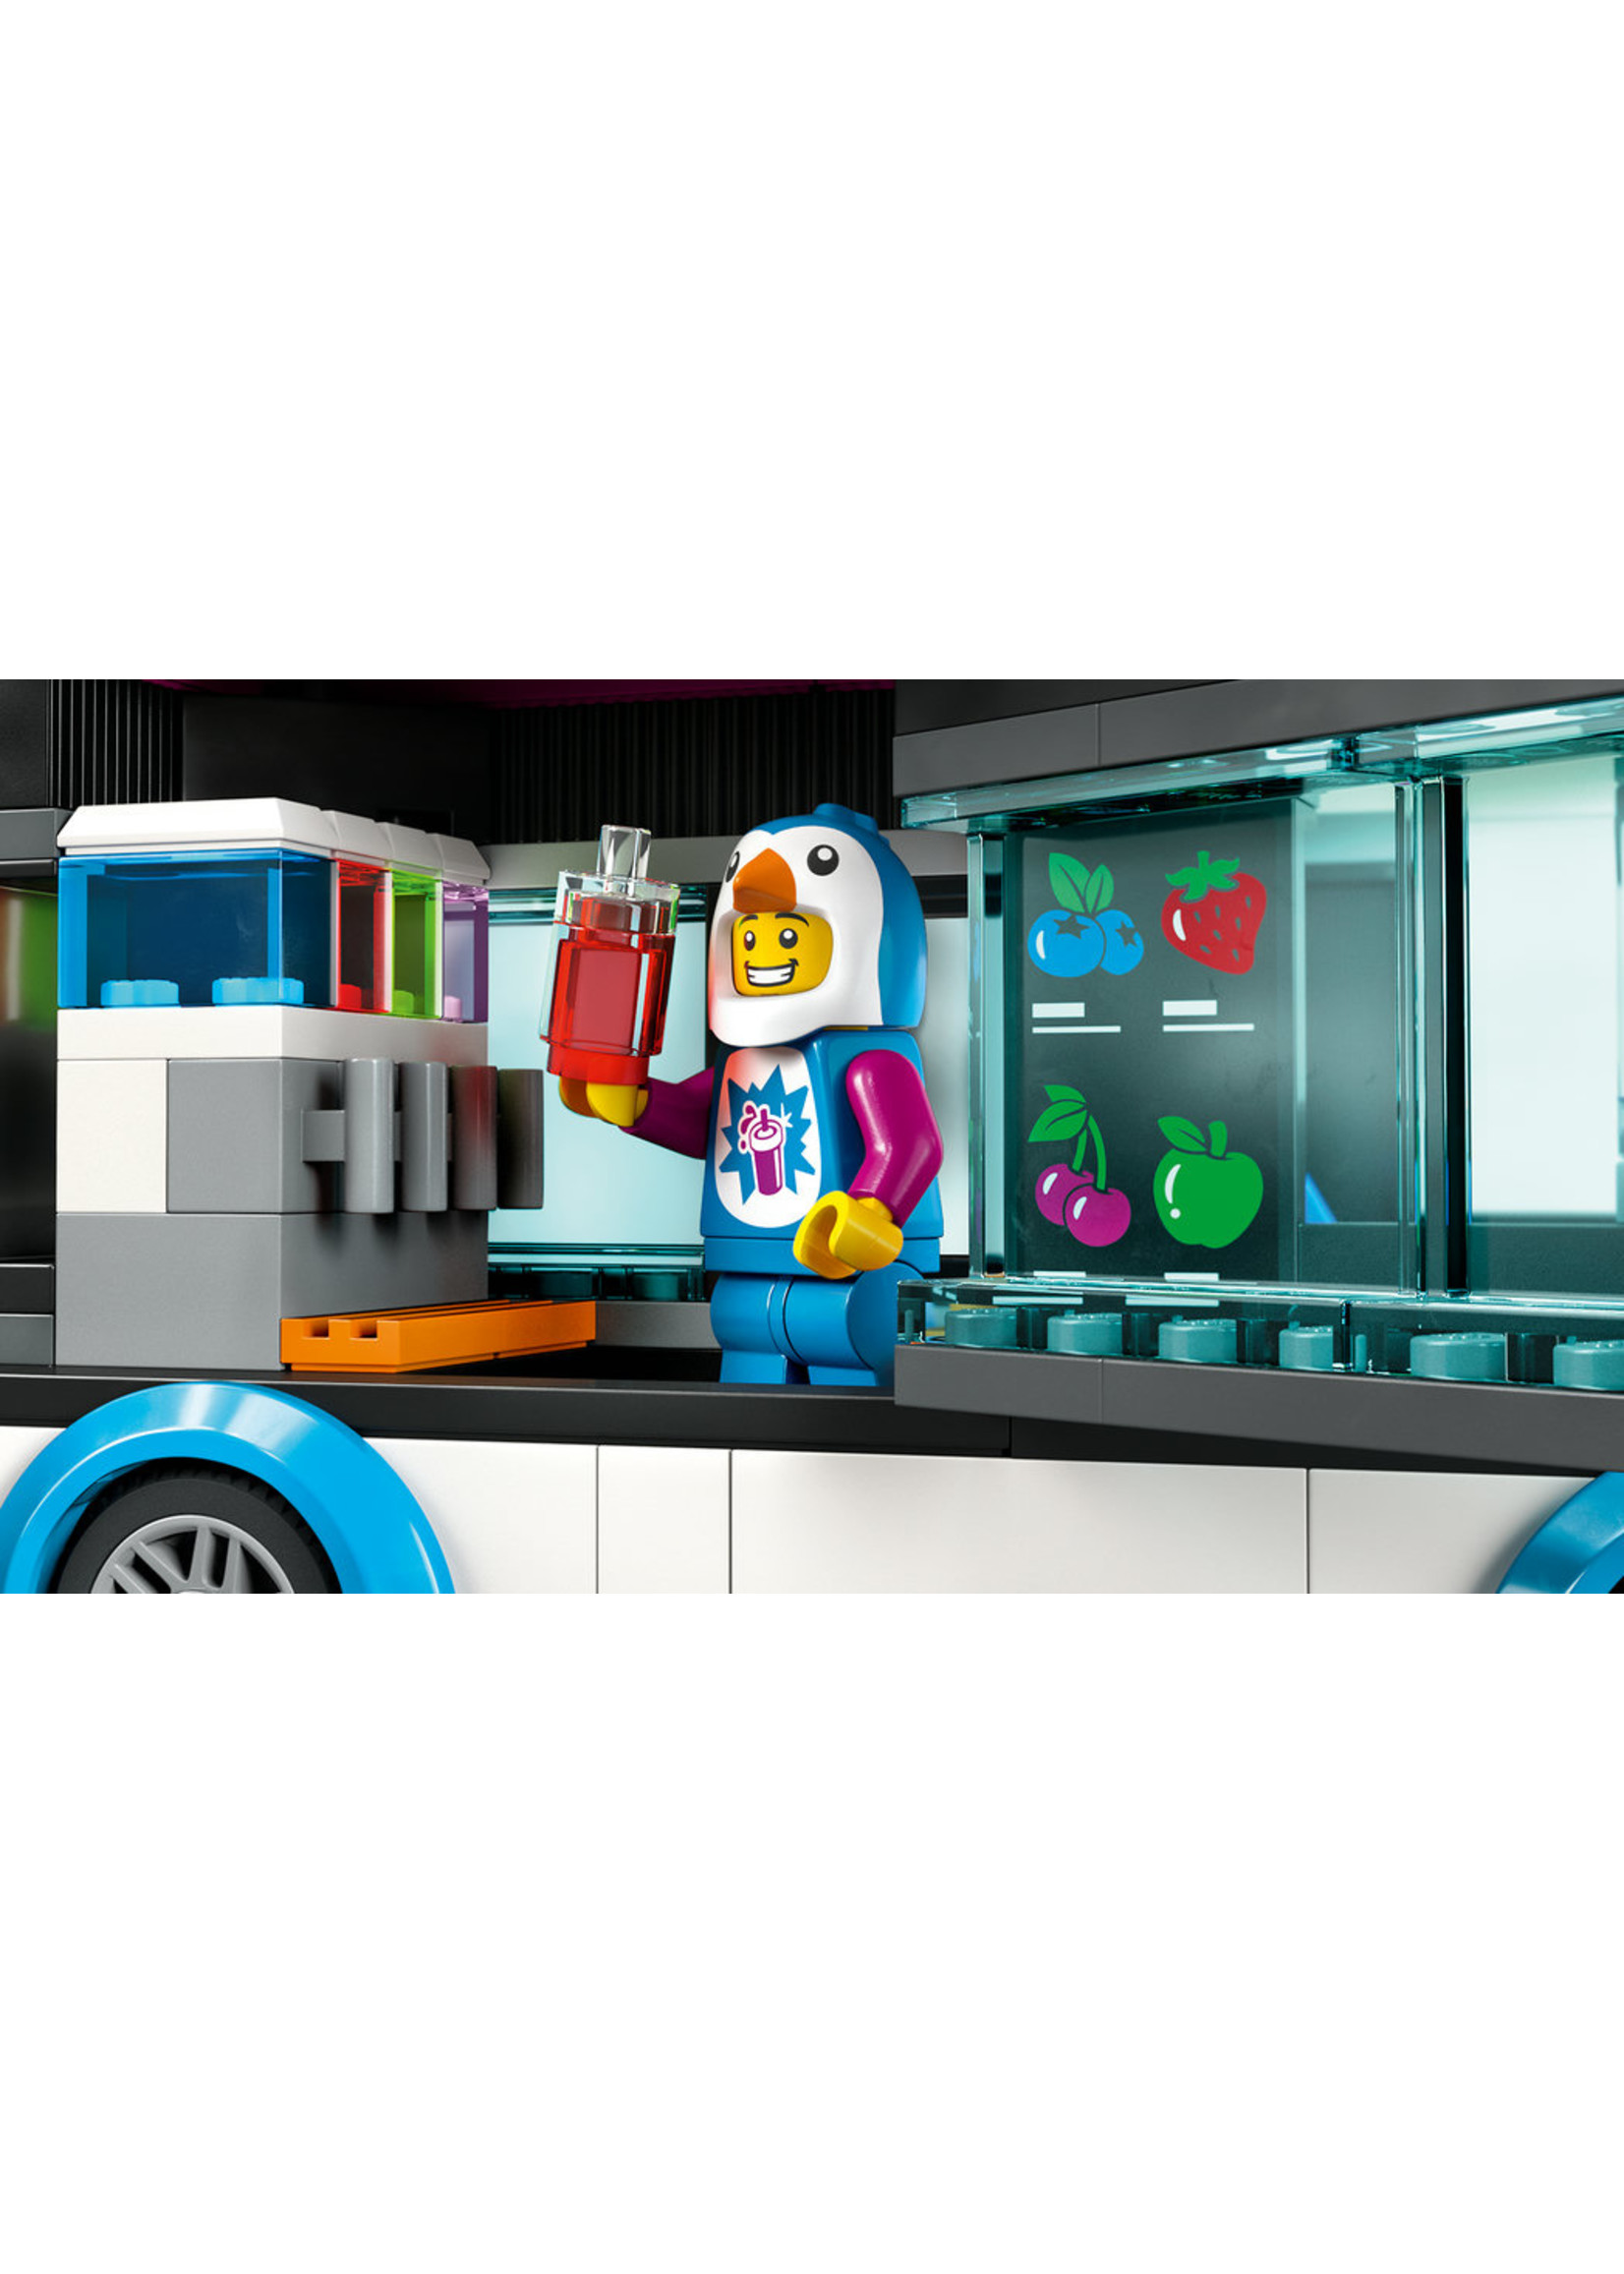 LEGO 60384 - Penguin Slushy Truck